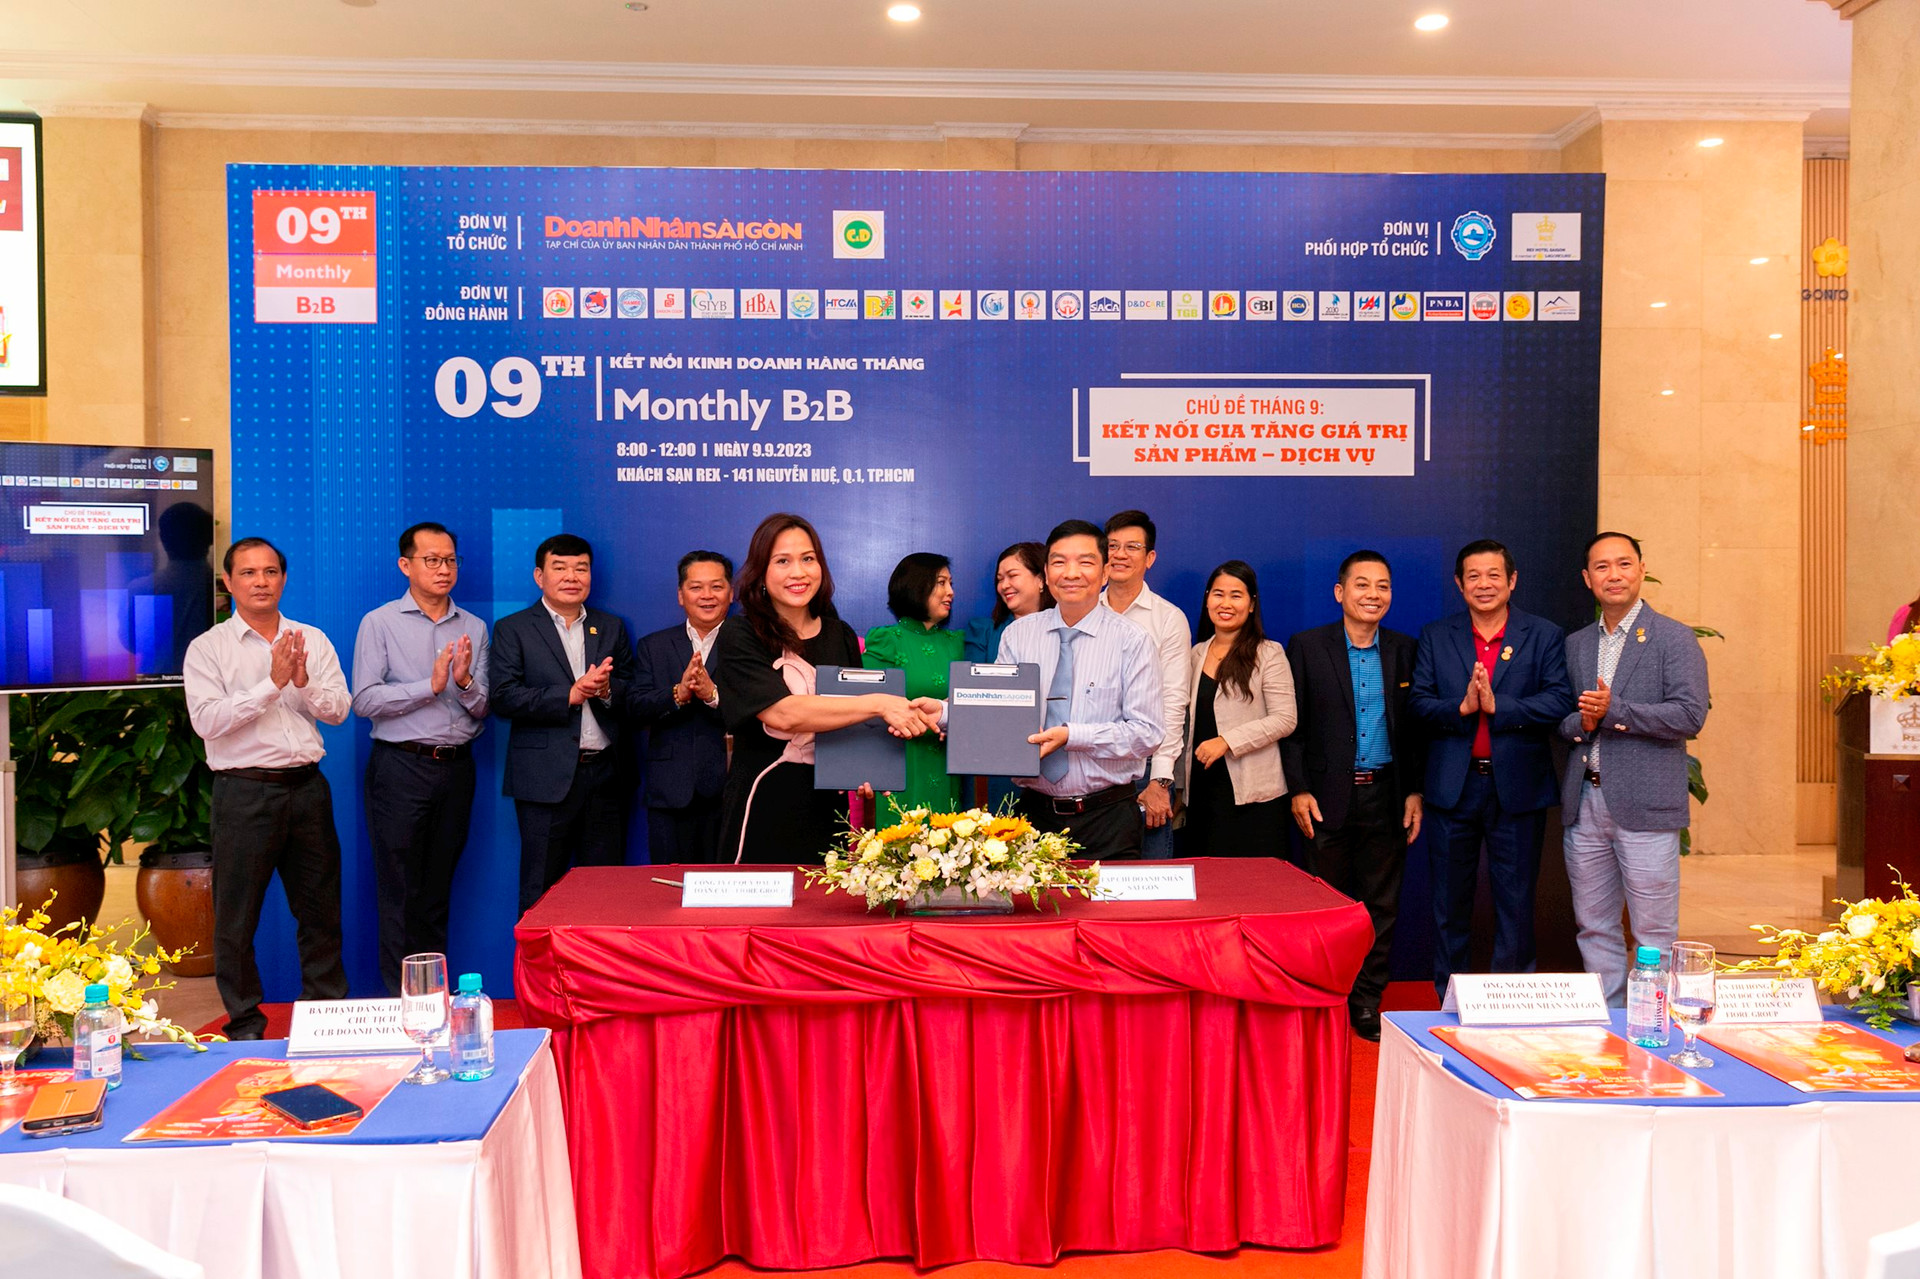 Tạp chí Doanh Nhân Sài Gòn đã ký kết hợp tác với Công ty CP Quỹ đầu tư Toàn Cầu - Fiore Group